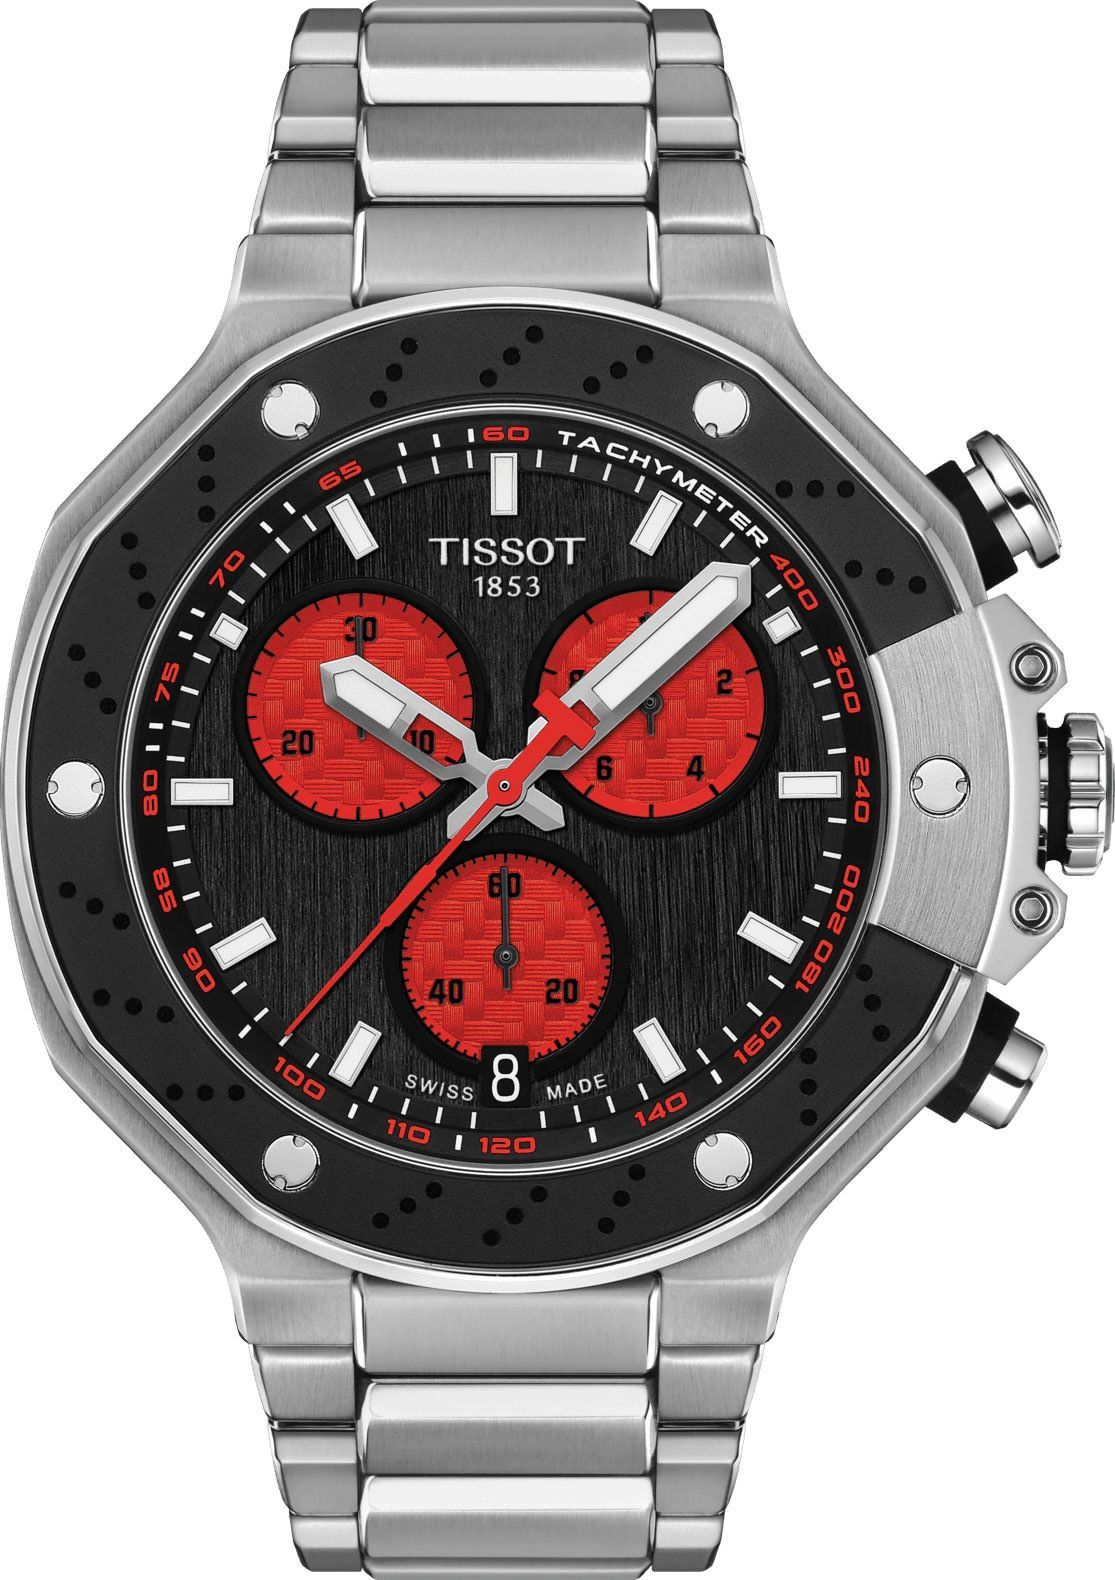 Tissot T-Sport Tissot T-Race MOTOGP Black Dial 45 mm Quartz Watch For Men - 1